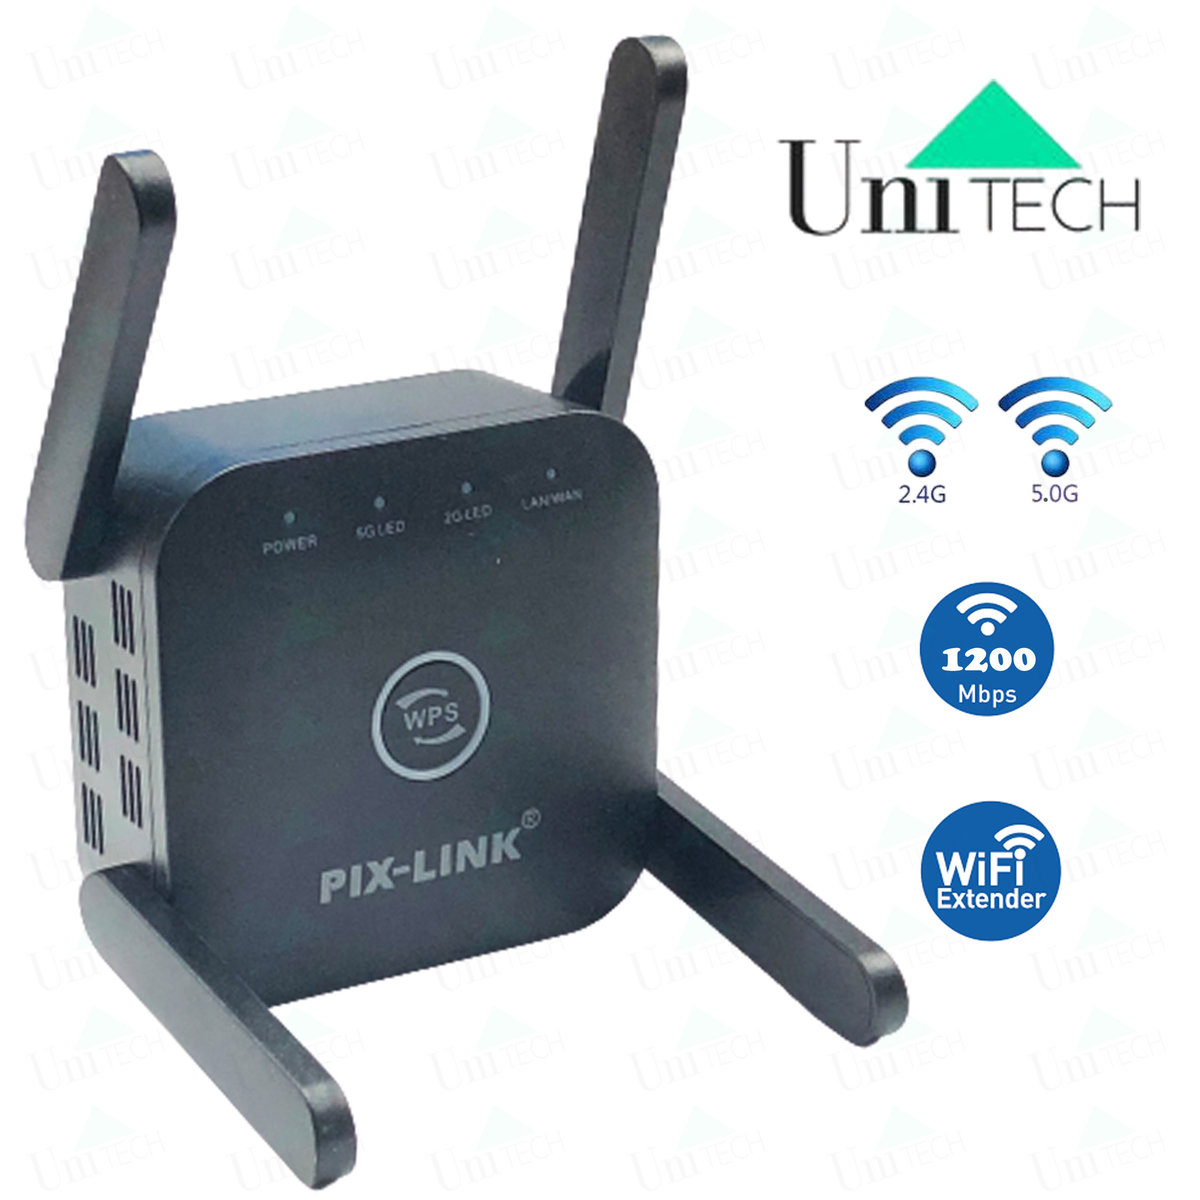 WiFi信號擴展器 插蘇型 無線訊號增強器 雙頻千兆信號擴展器 信號延伸器 範圍擴展器 / 路由器router擴展 / 無線AP 配備 4x 高功率天線 黑色